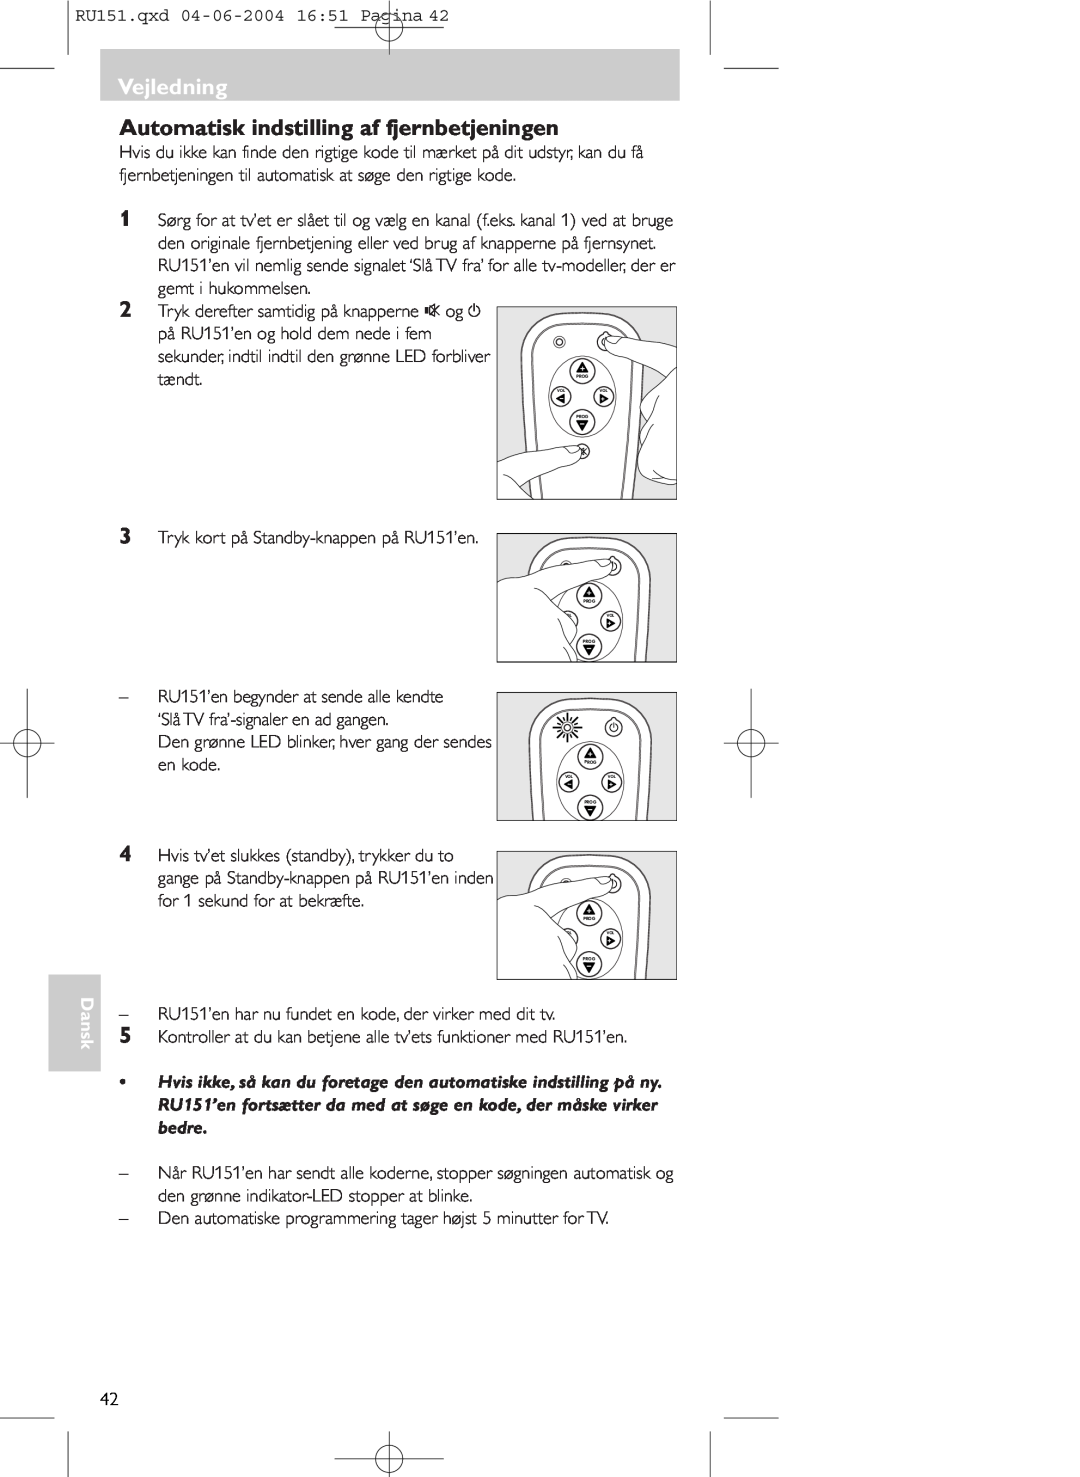 Philips SBC RU 151 manual Automatisk indstilling af fjernbetjeningen, Vejledning, Dansk 